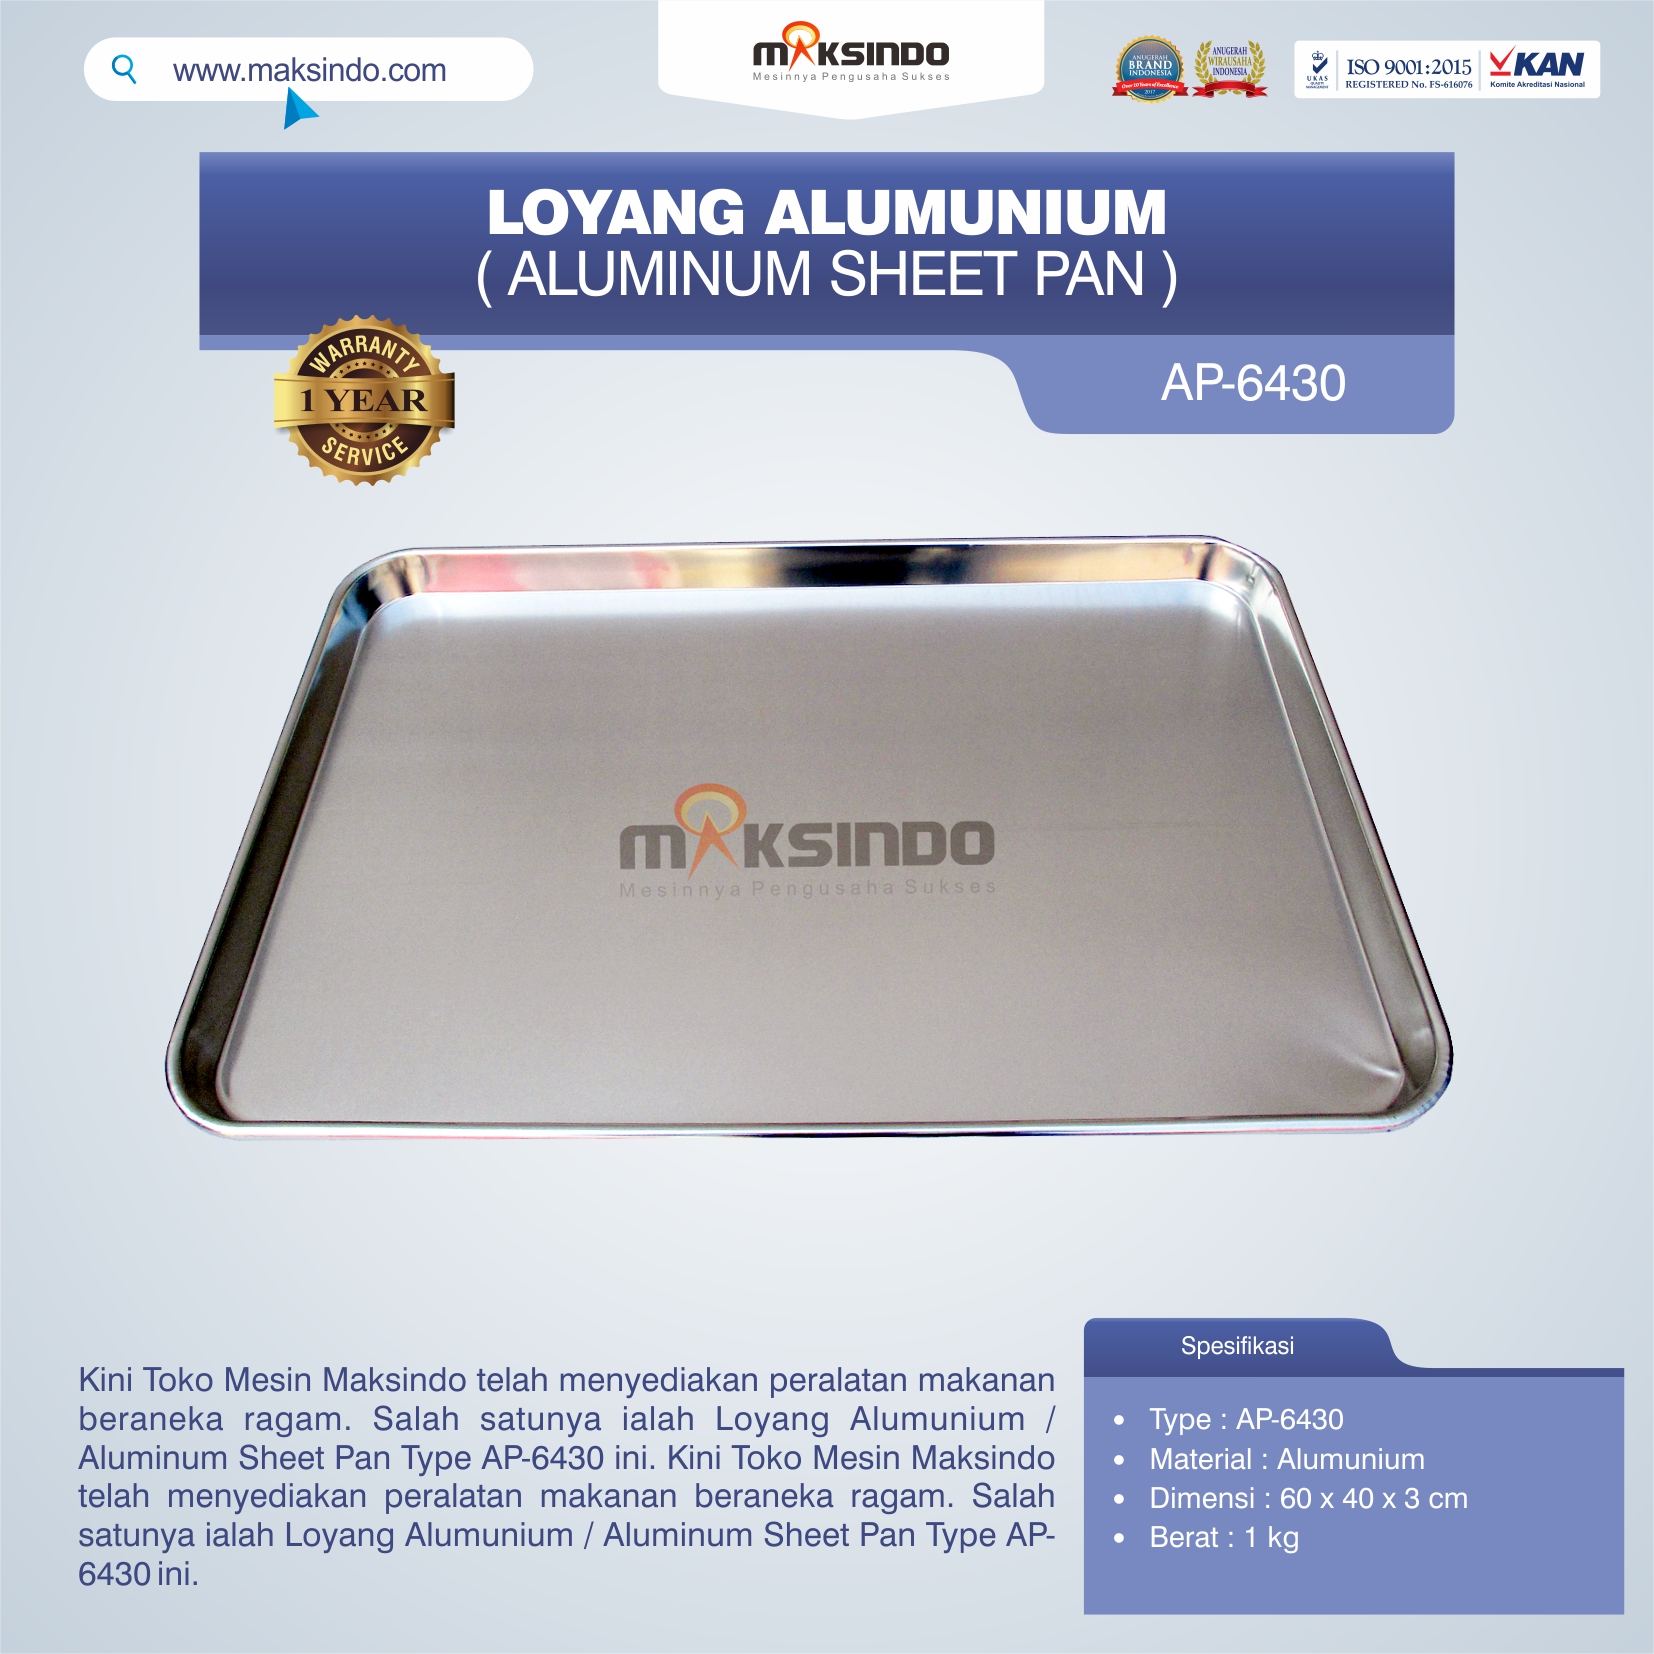 Loyang Alumunium / Aluminum Sheet Pan Type AP-6430